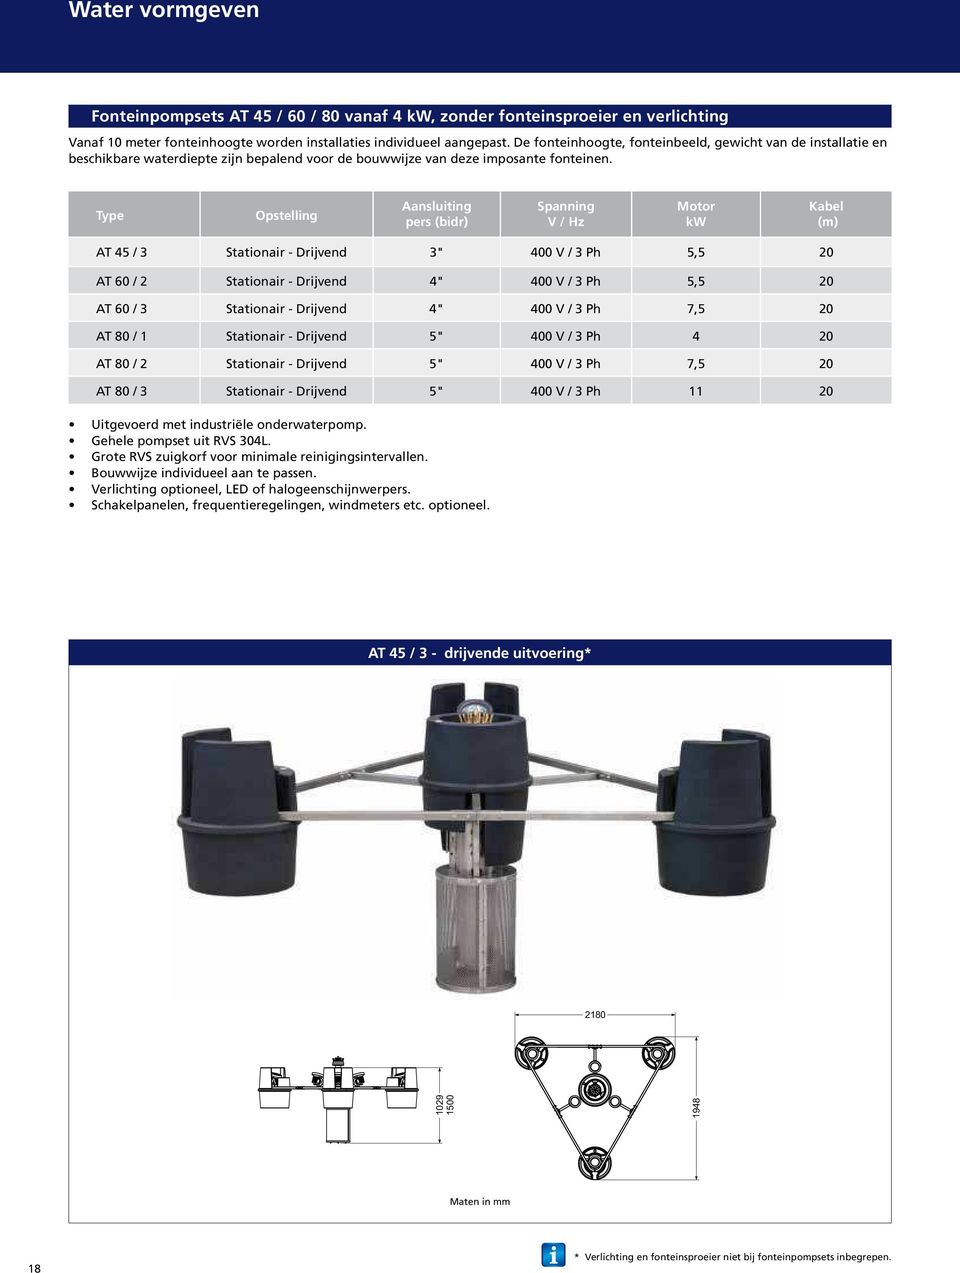 Type Opstelling Aansluiting pers (bidr) Spanning V / Hz Motor kw Kabel (m) AT 45 / 3 Stationair - Drijvend 3" 400 V / 3 Ph 5,5 20 AT 60 / 2 Stationair - Drijvend 4" 400 V / 3 Ph 5,5 20 AT 60 / 3